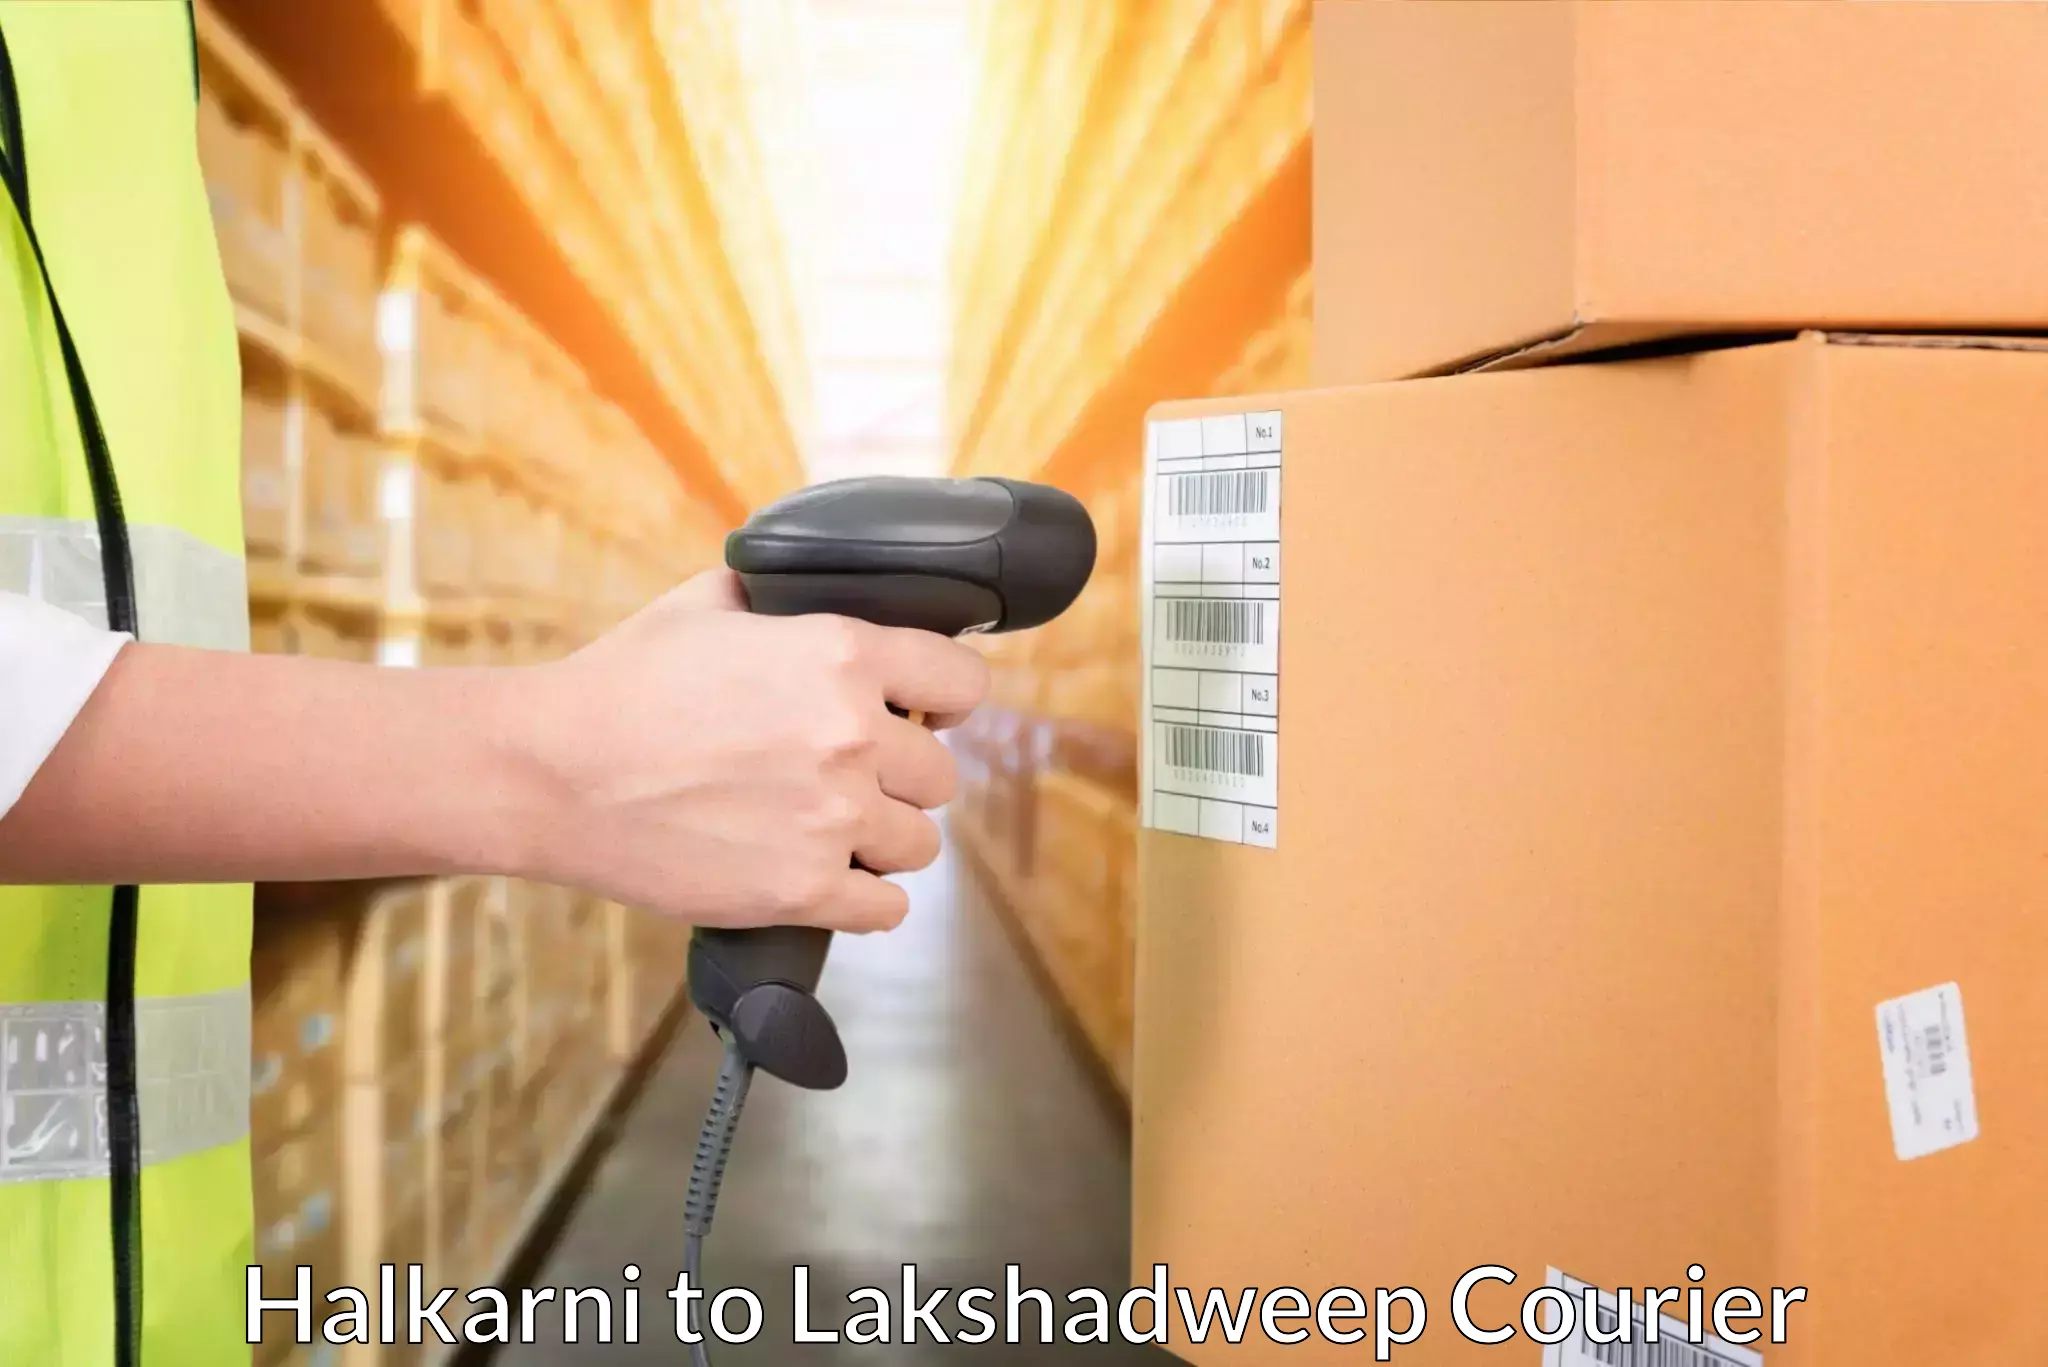 Door-to-door freight service Halkarni to Lakshadweep